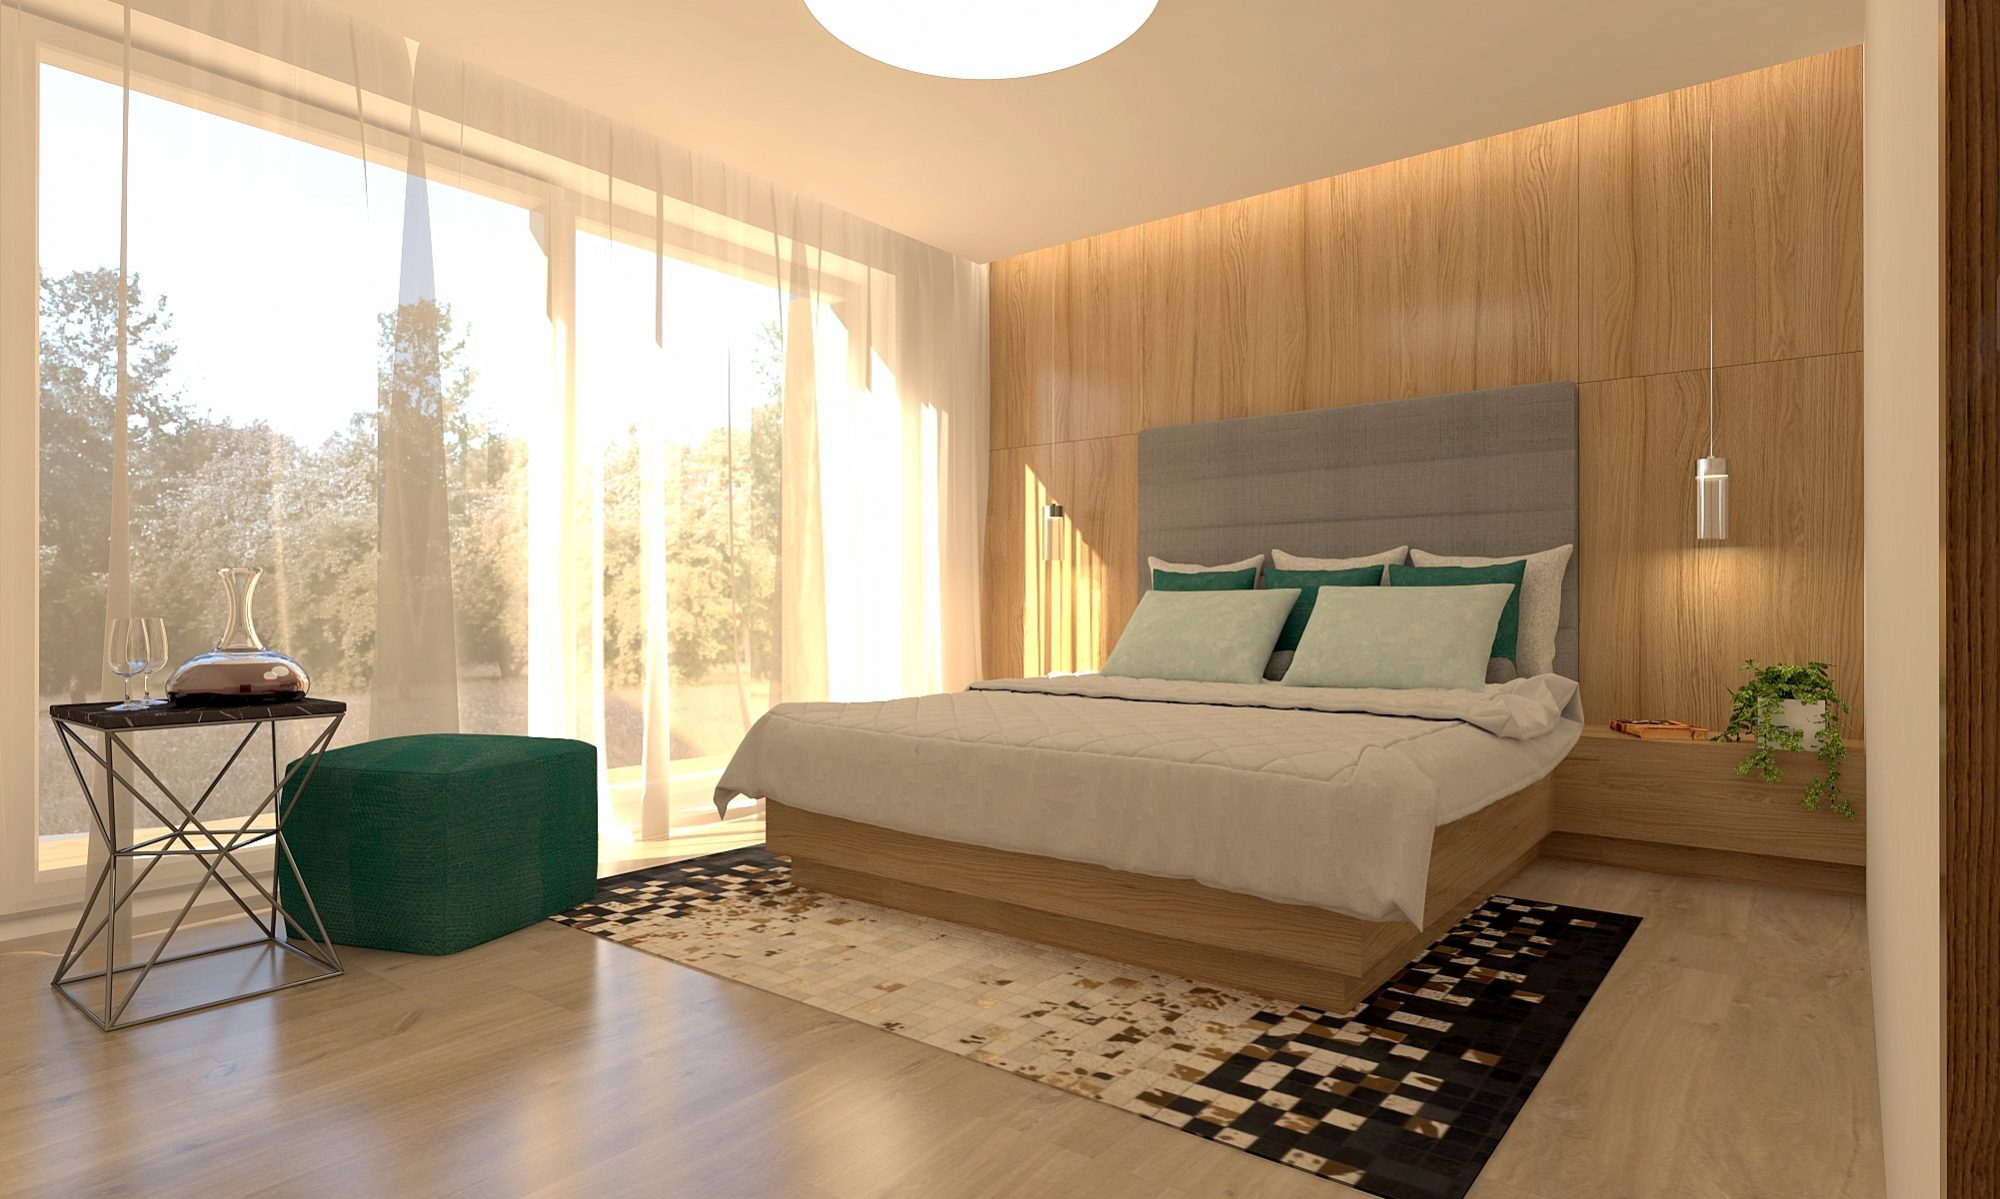 Спальня зеленая и древесная